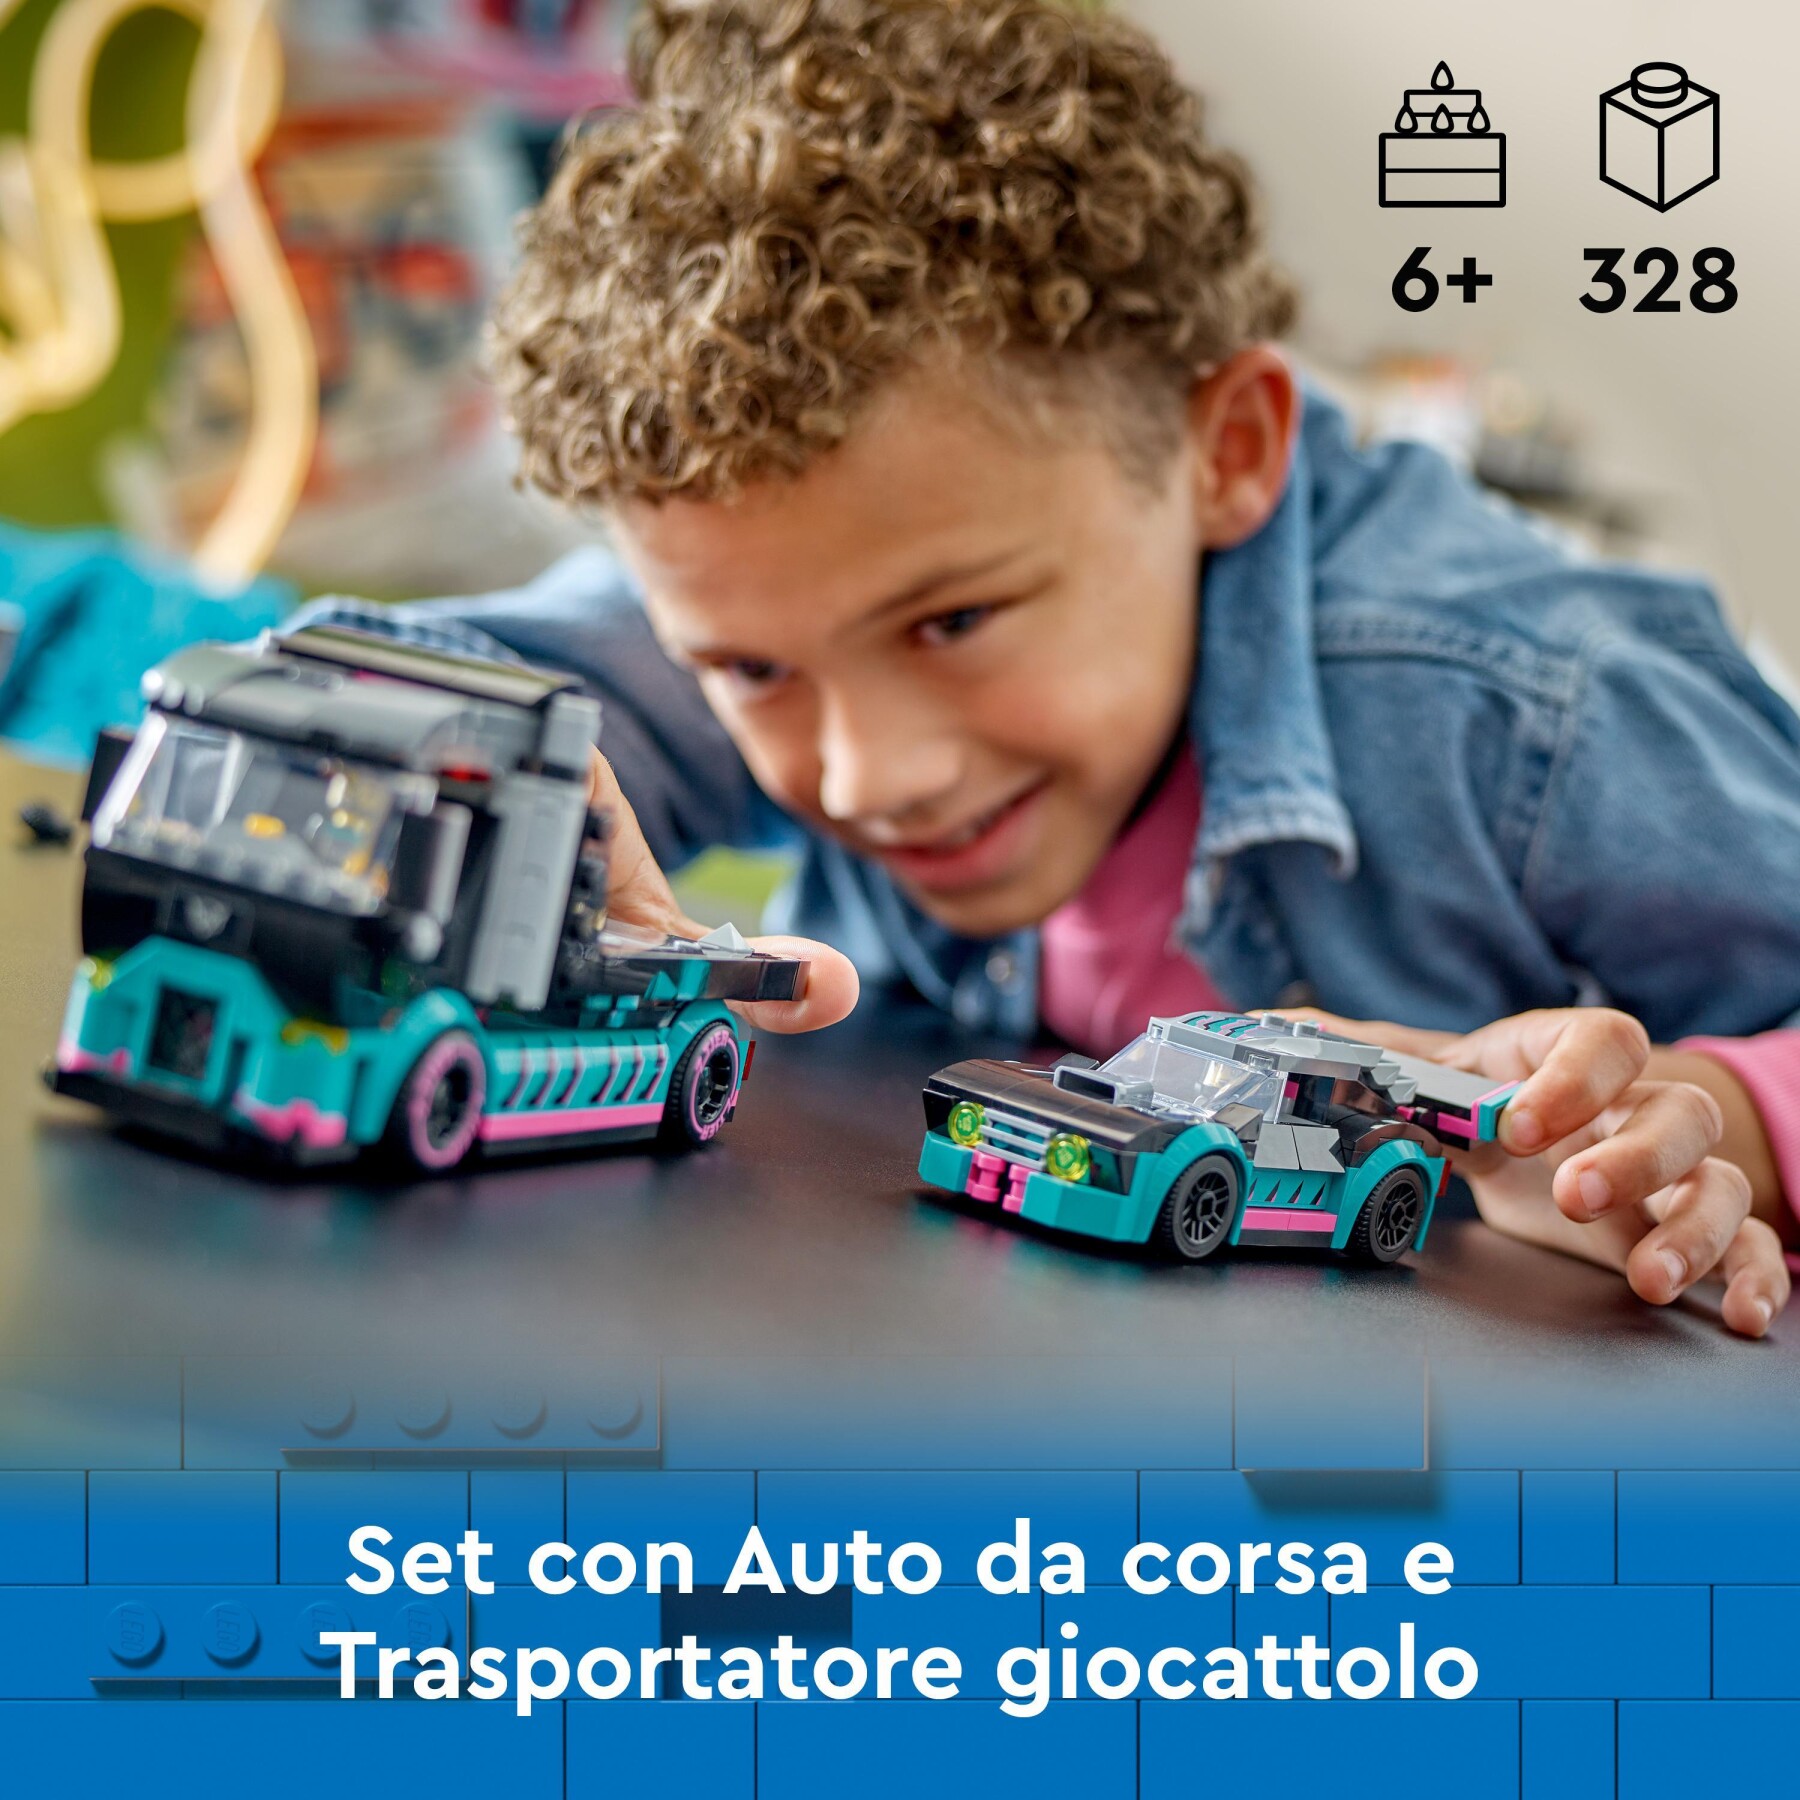 Lego city 60406 auto da corsa e trasportatore, macchina e camion giocattolo per bambini di 6+, veicolo con rampa funzionante - LEGO CITY